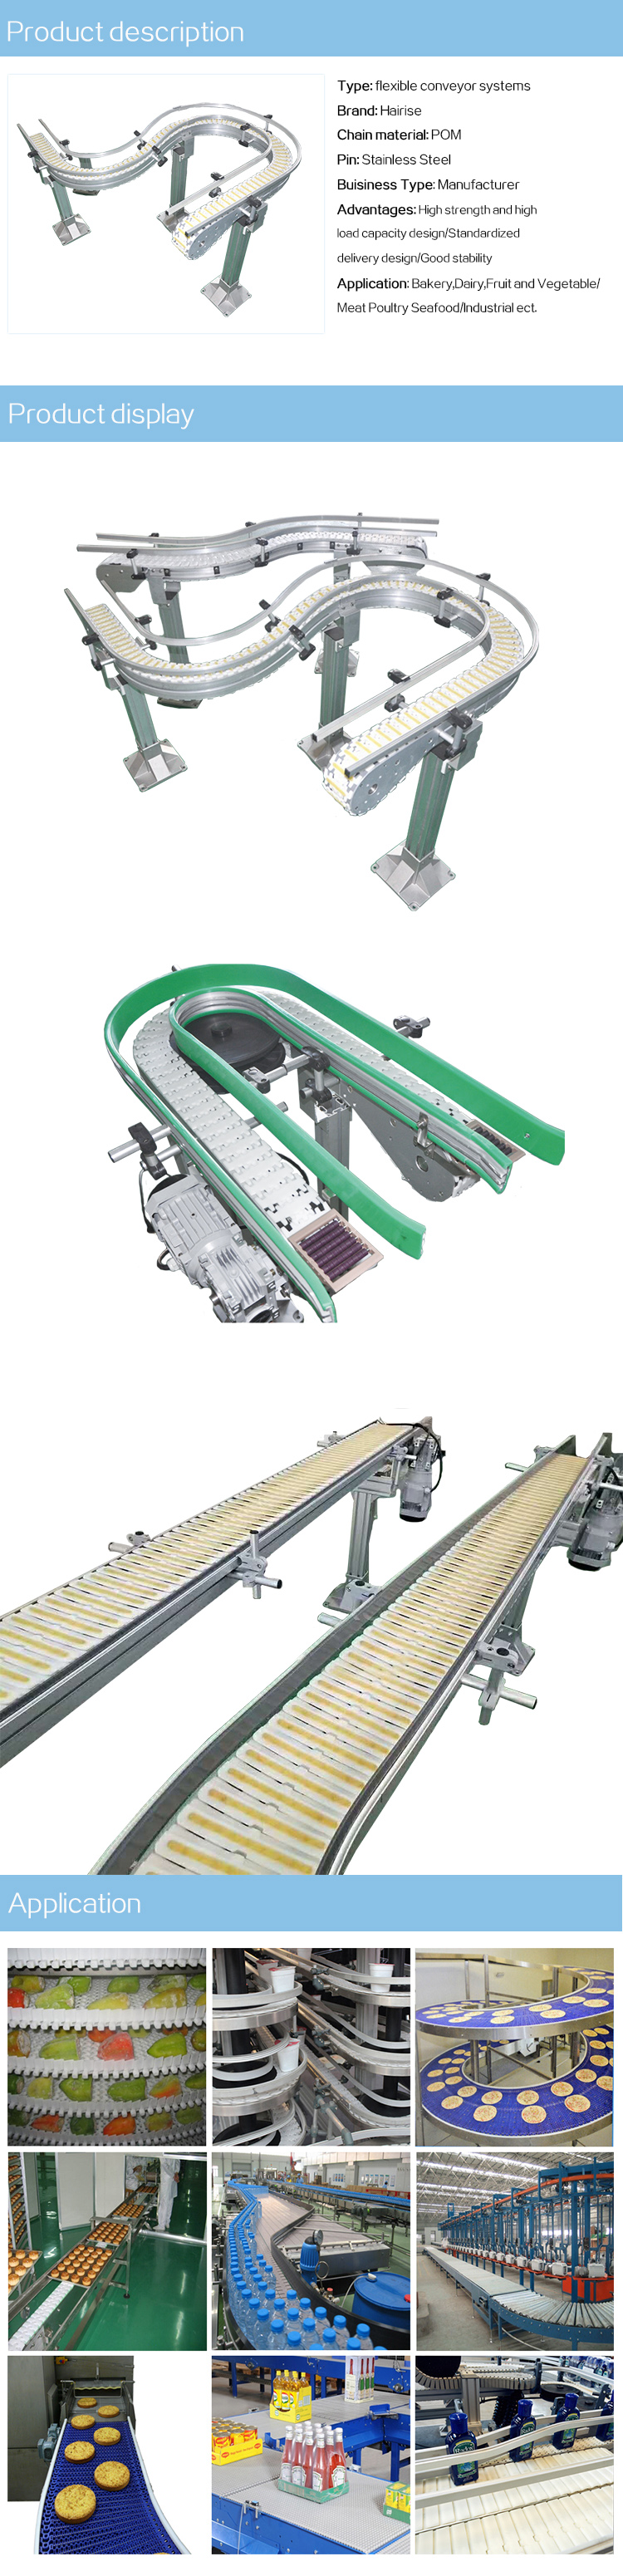 flexible conveyor.jpg